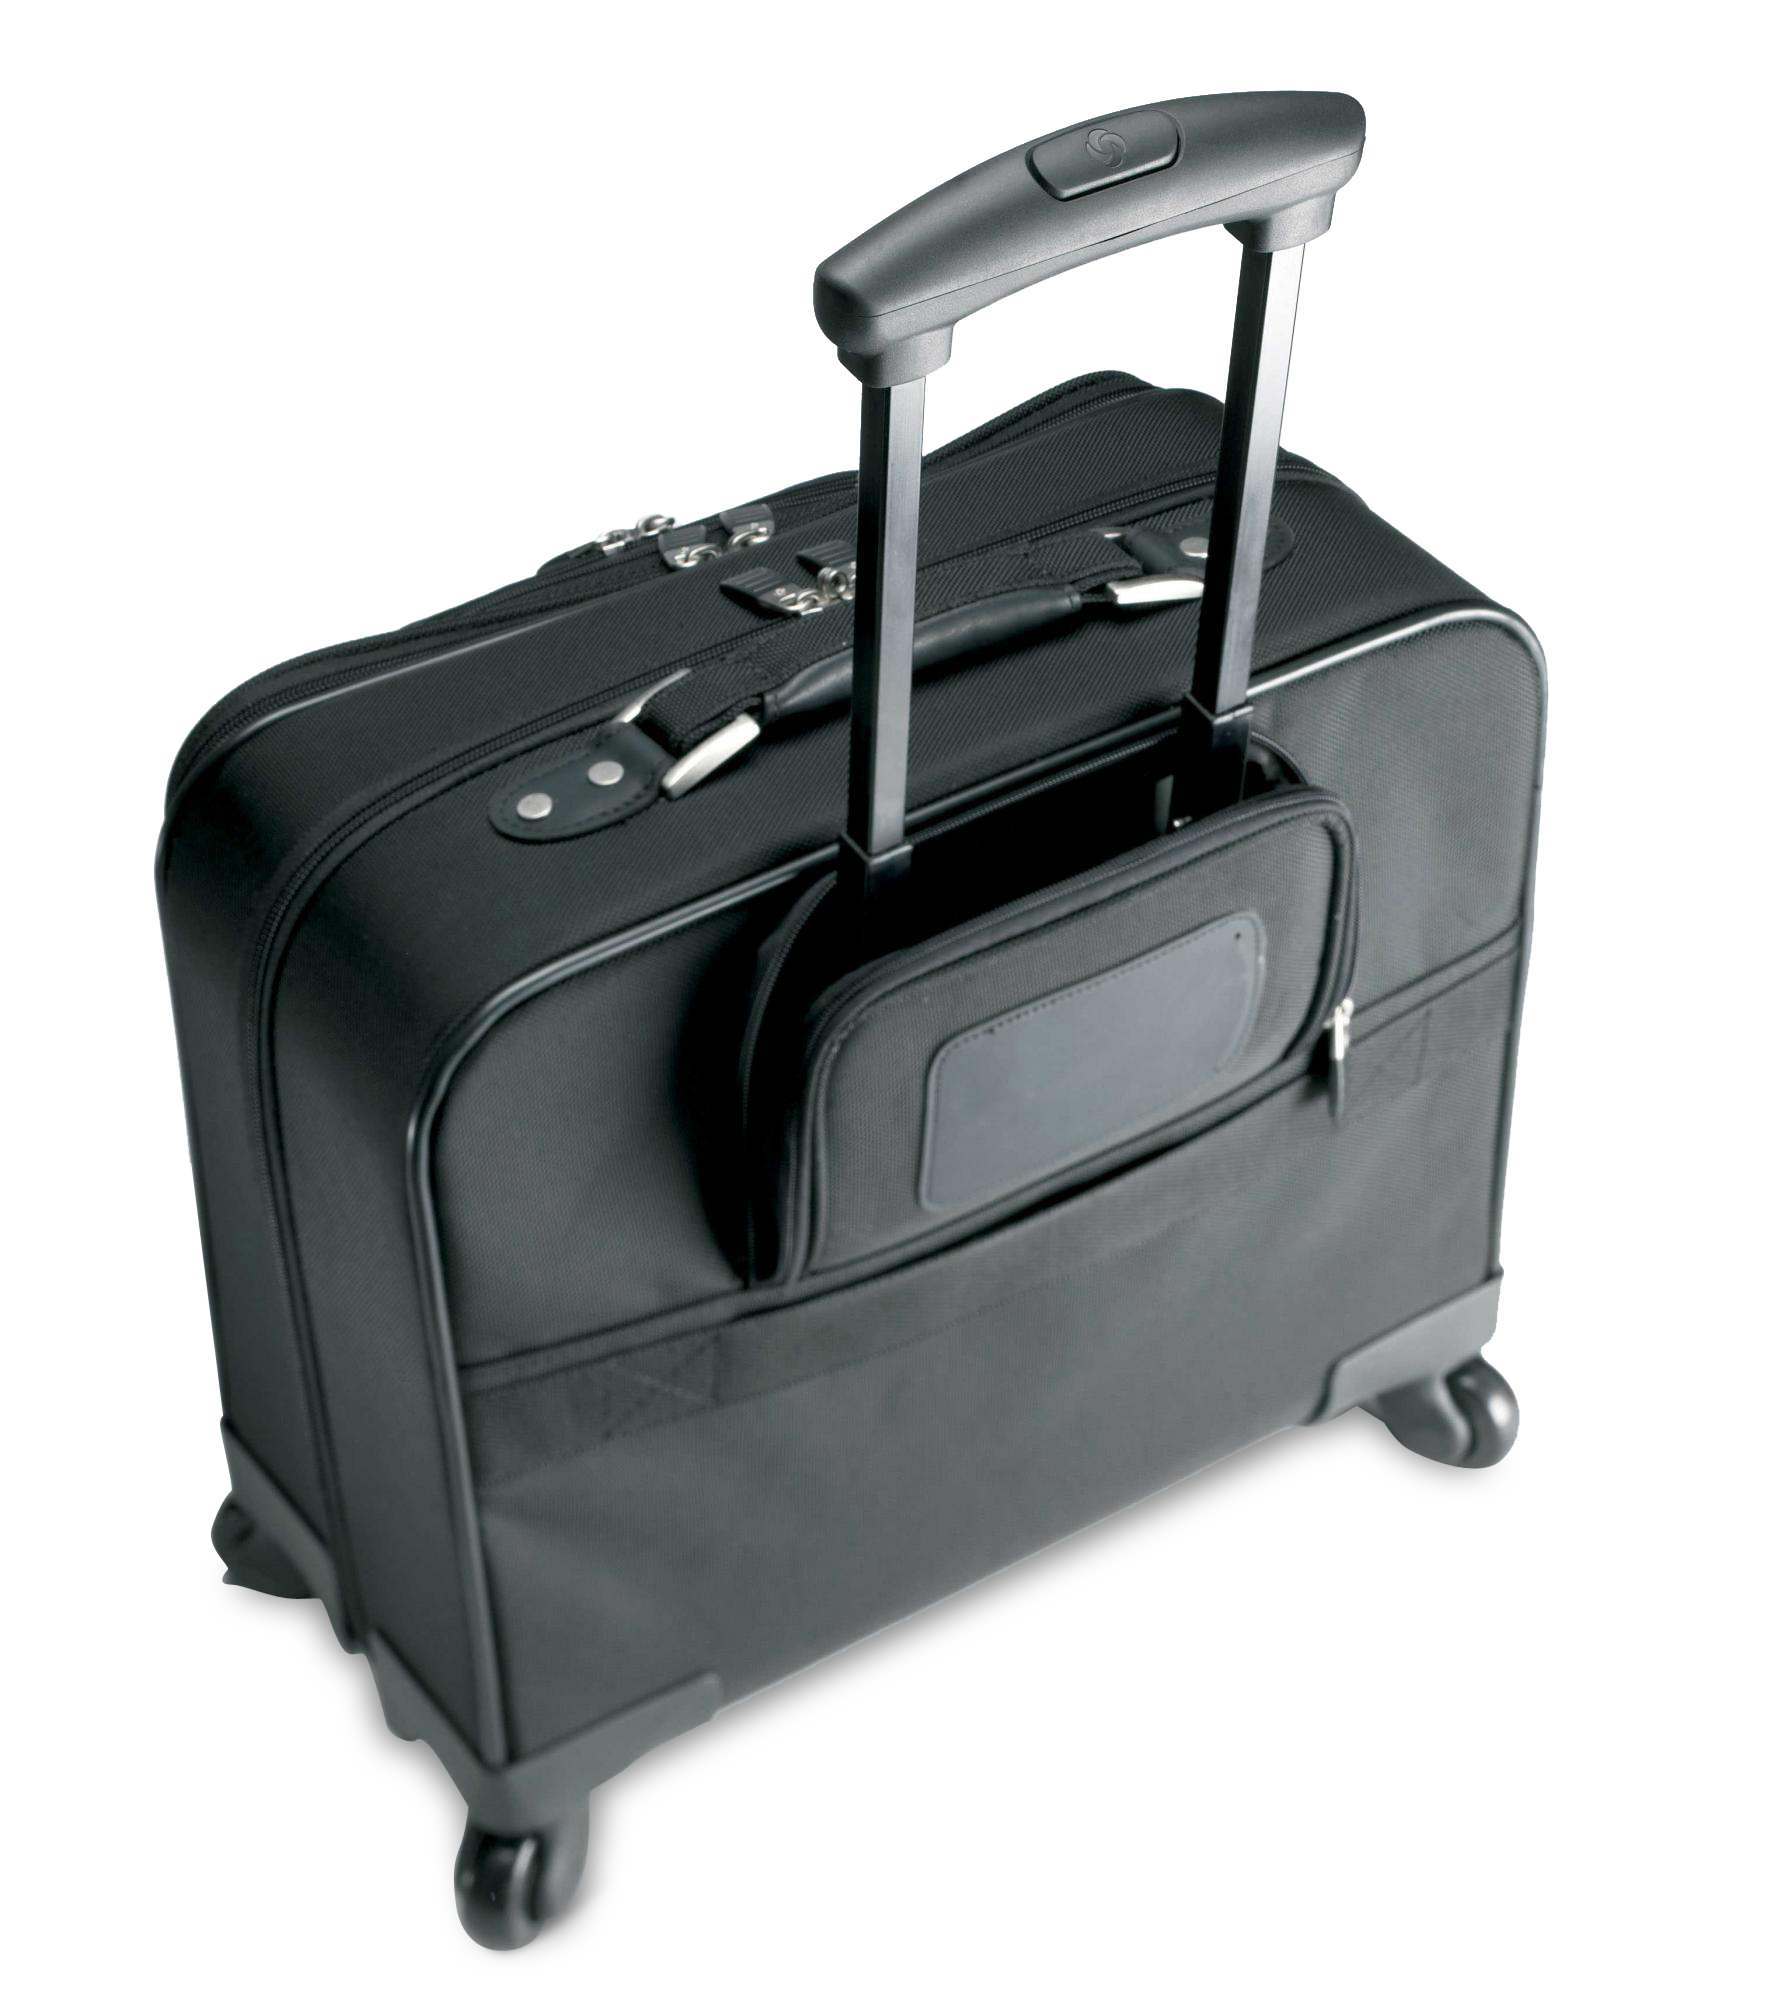 Samsonite Spinner Mobile Office – Luggage Pros